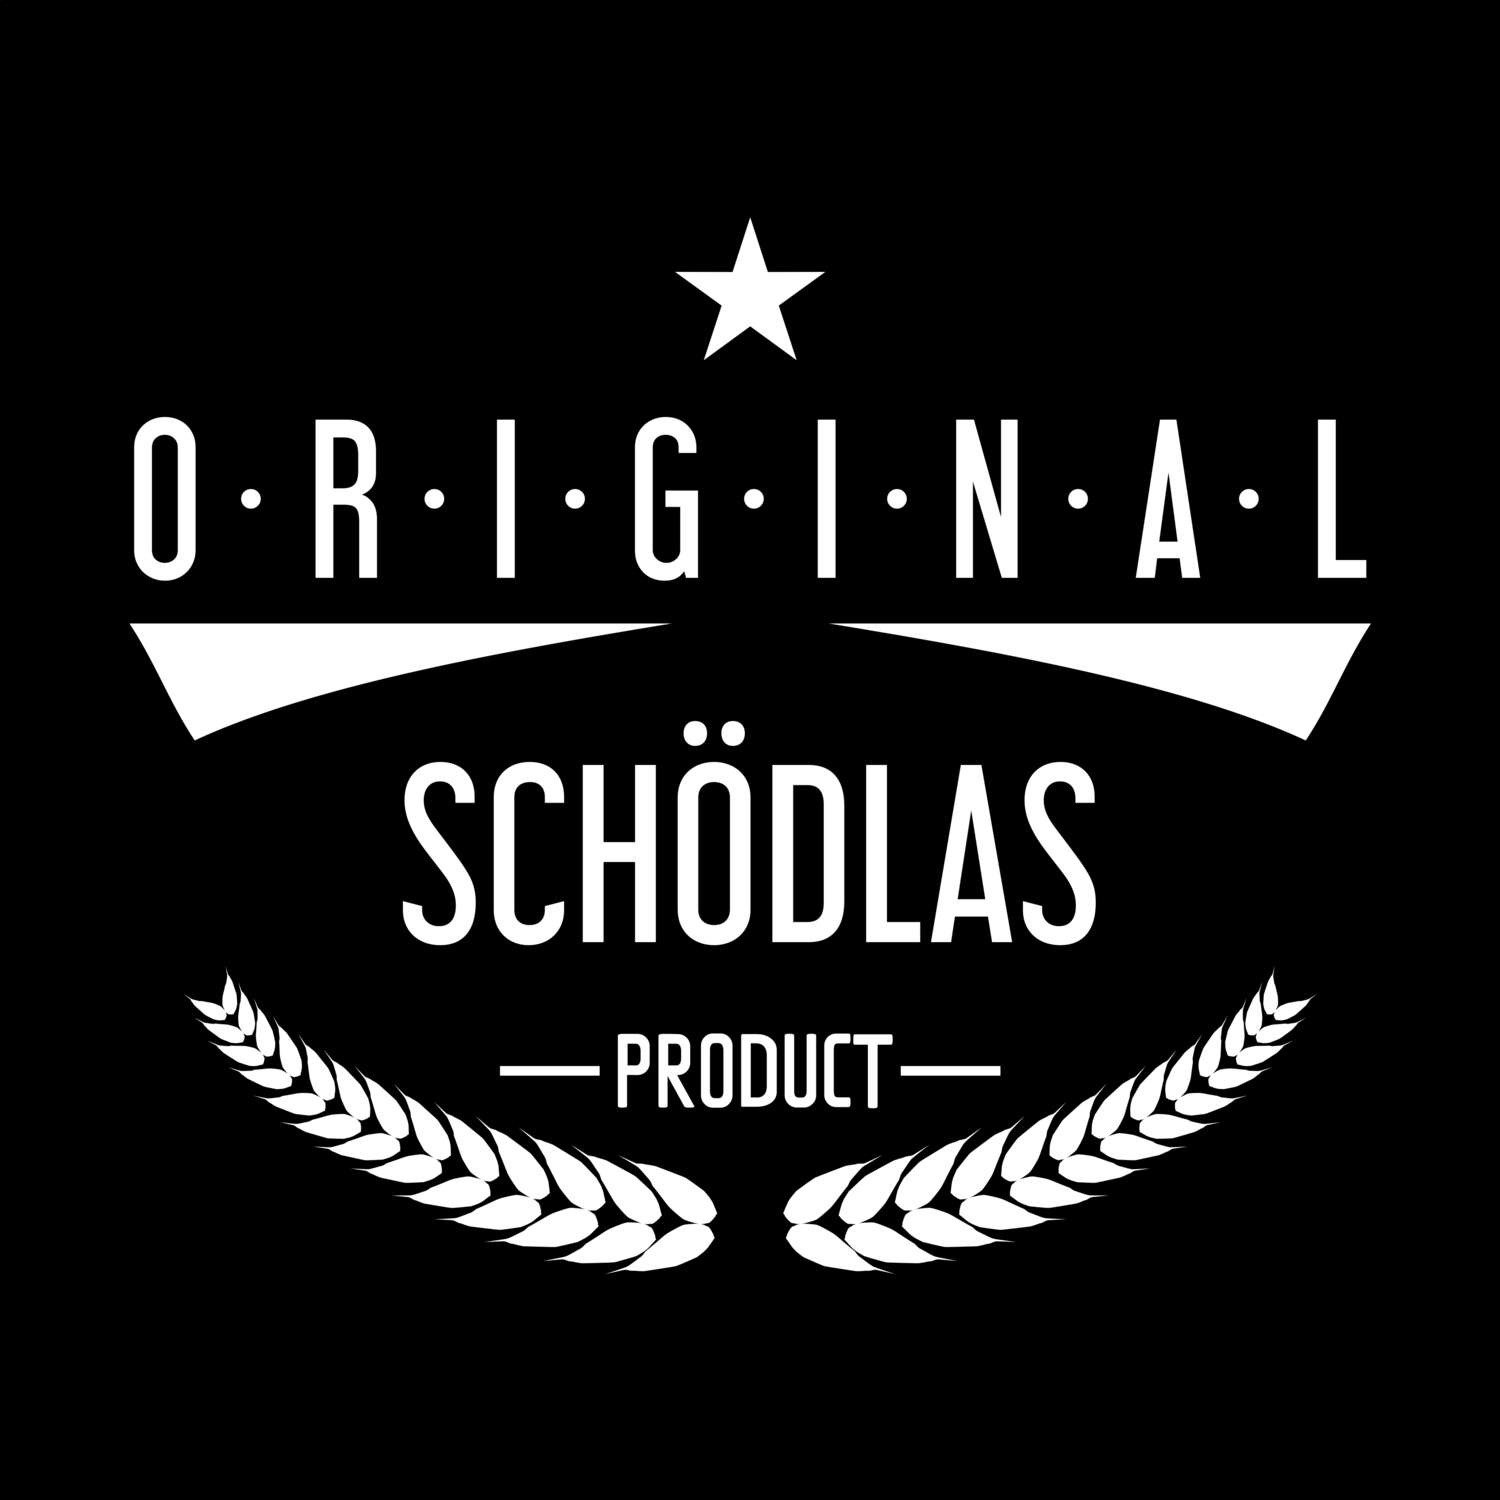 Schödlas T-Shirt »Original Product«